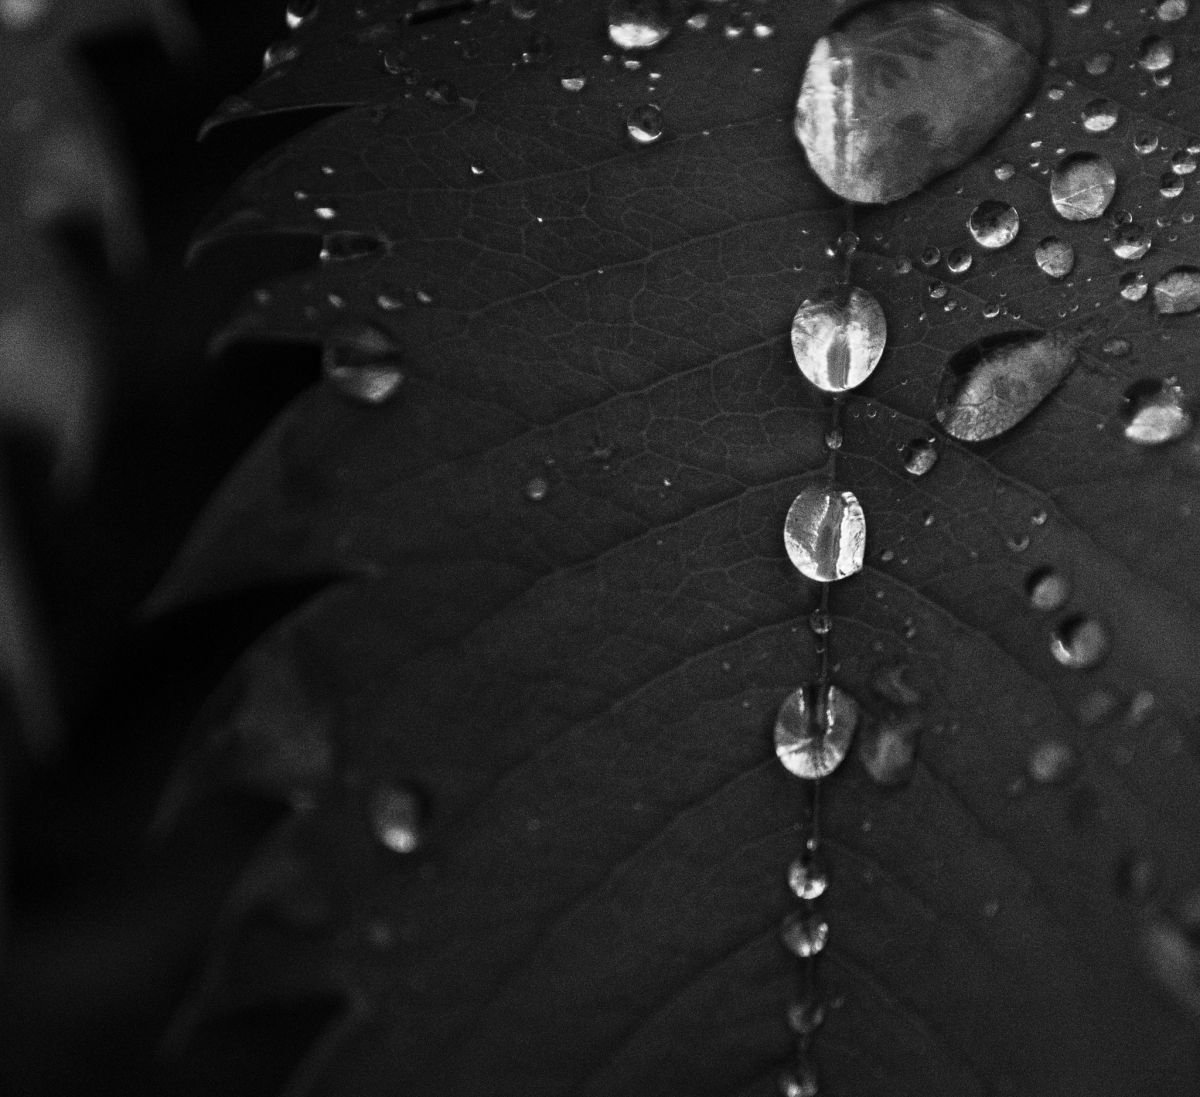 Water on Leaves II by Charles Brabin